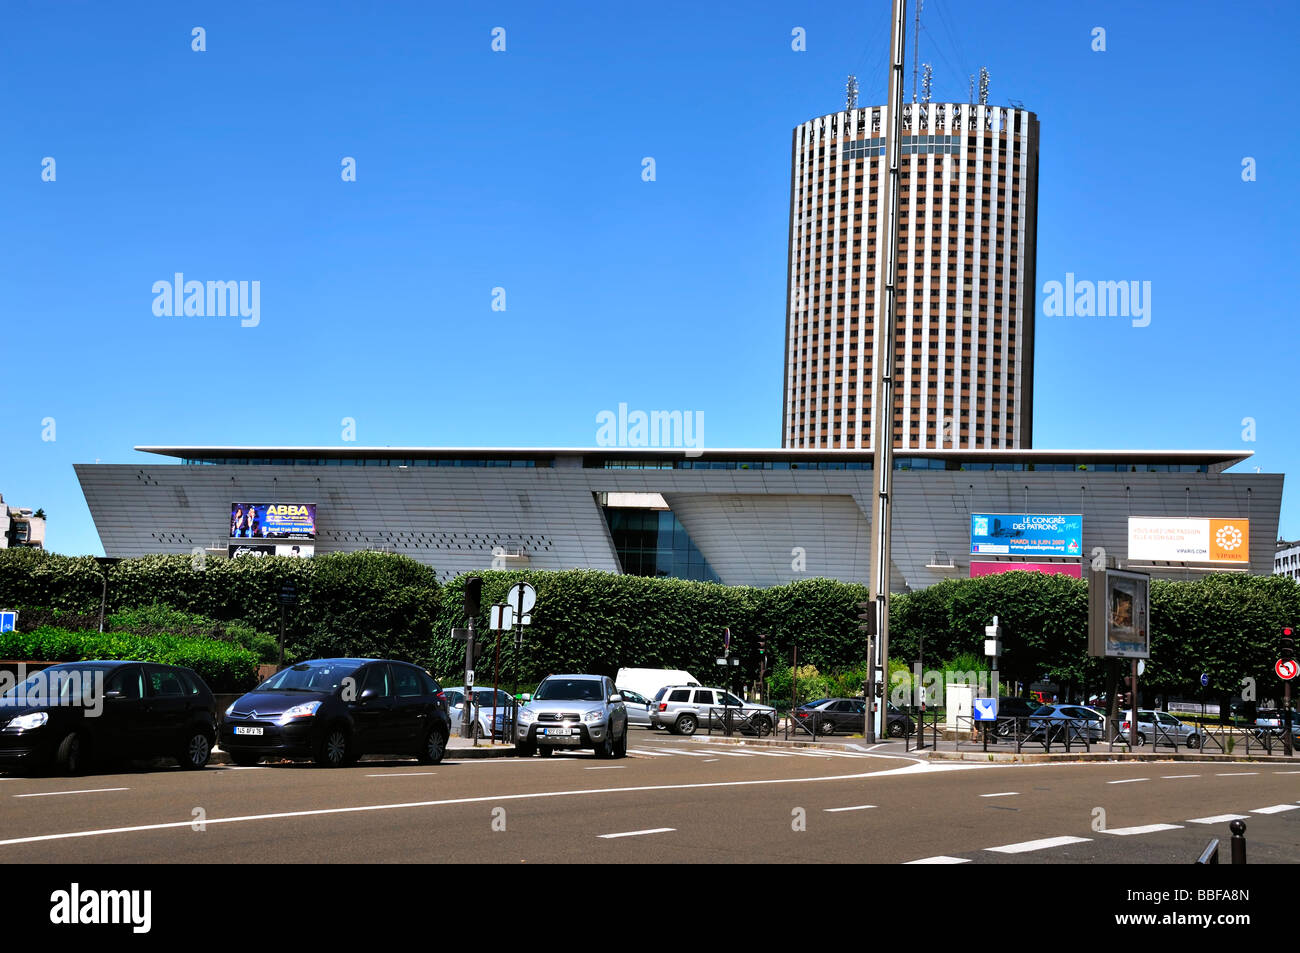 Palais des congres paris hi-res stock photography and images - Alamy